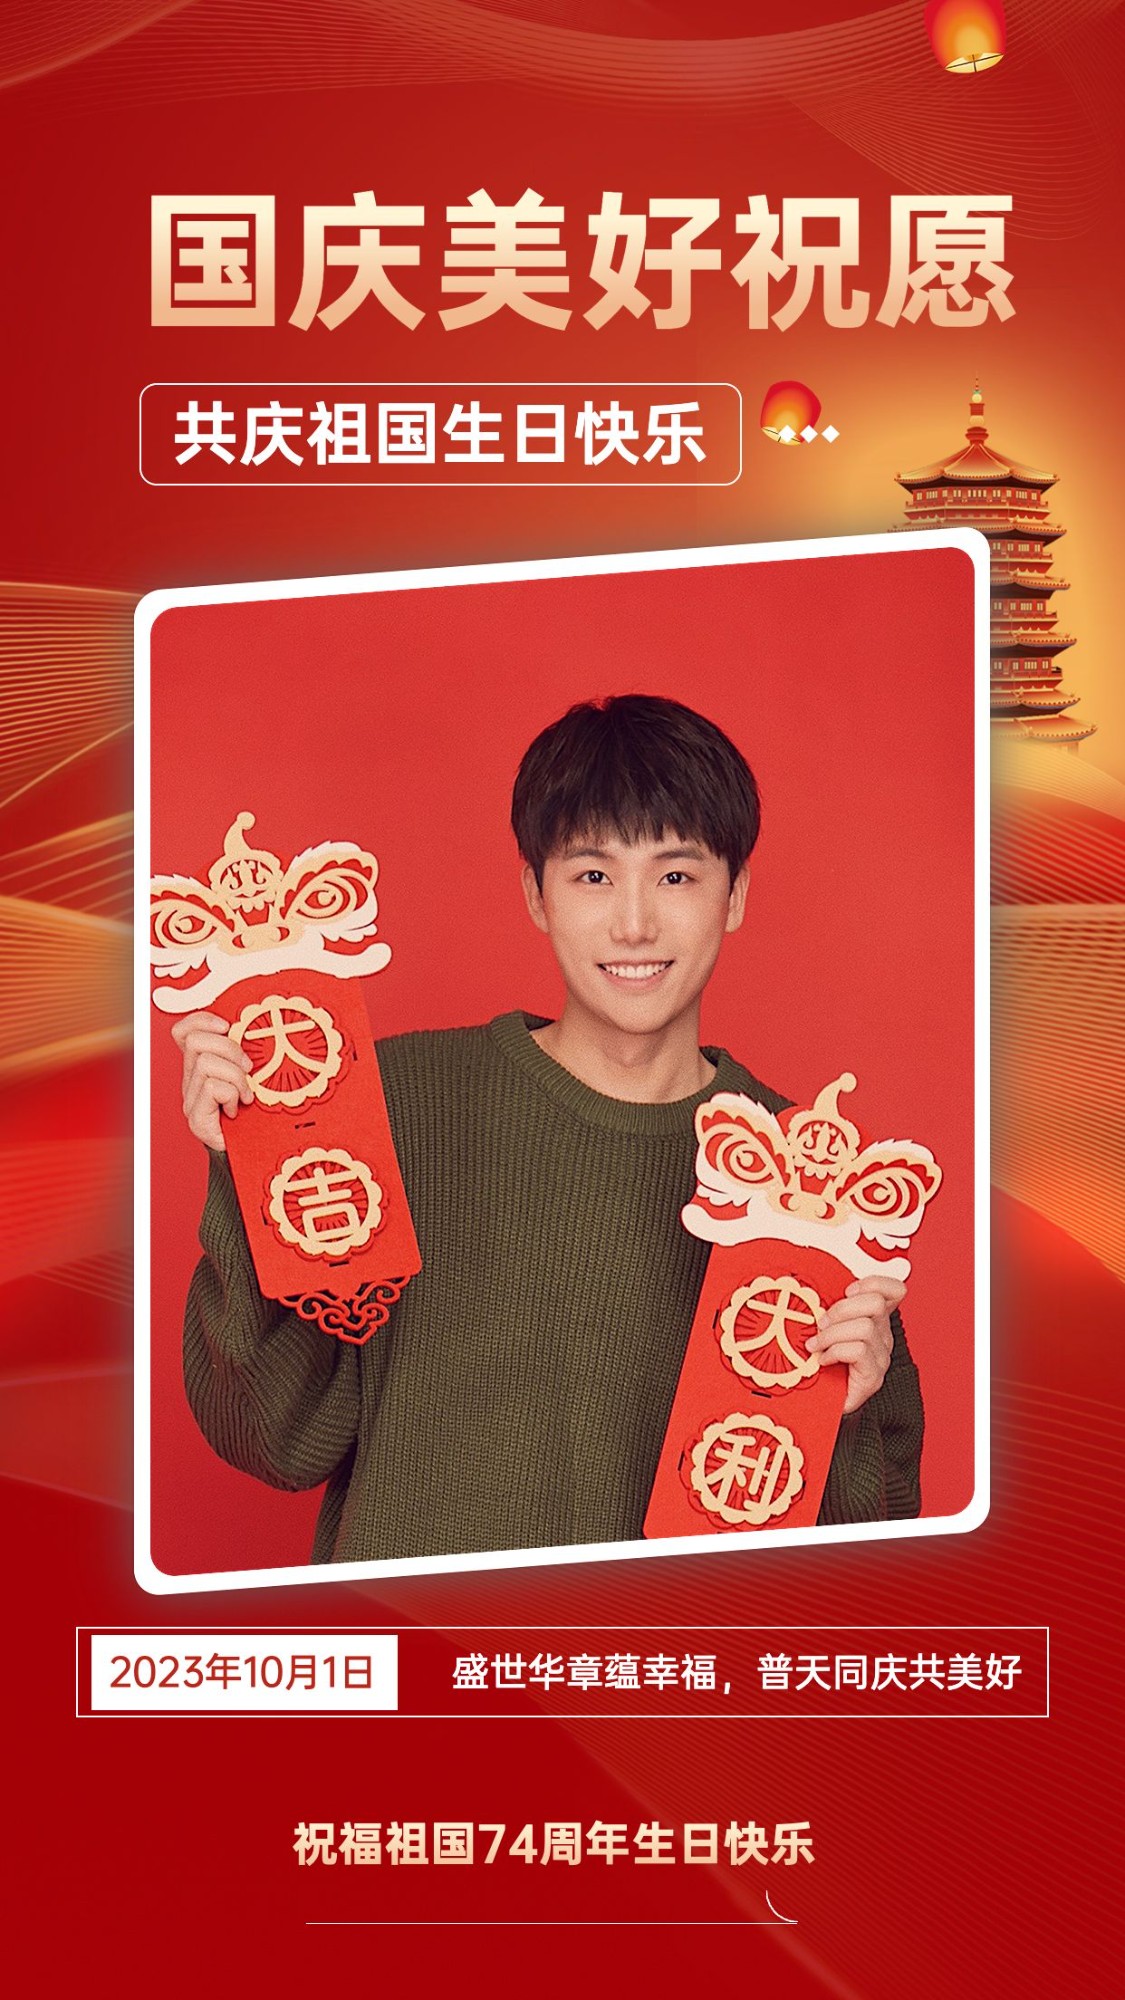 十一国庆节节日祝福问候人物晒照中国风手机海报